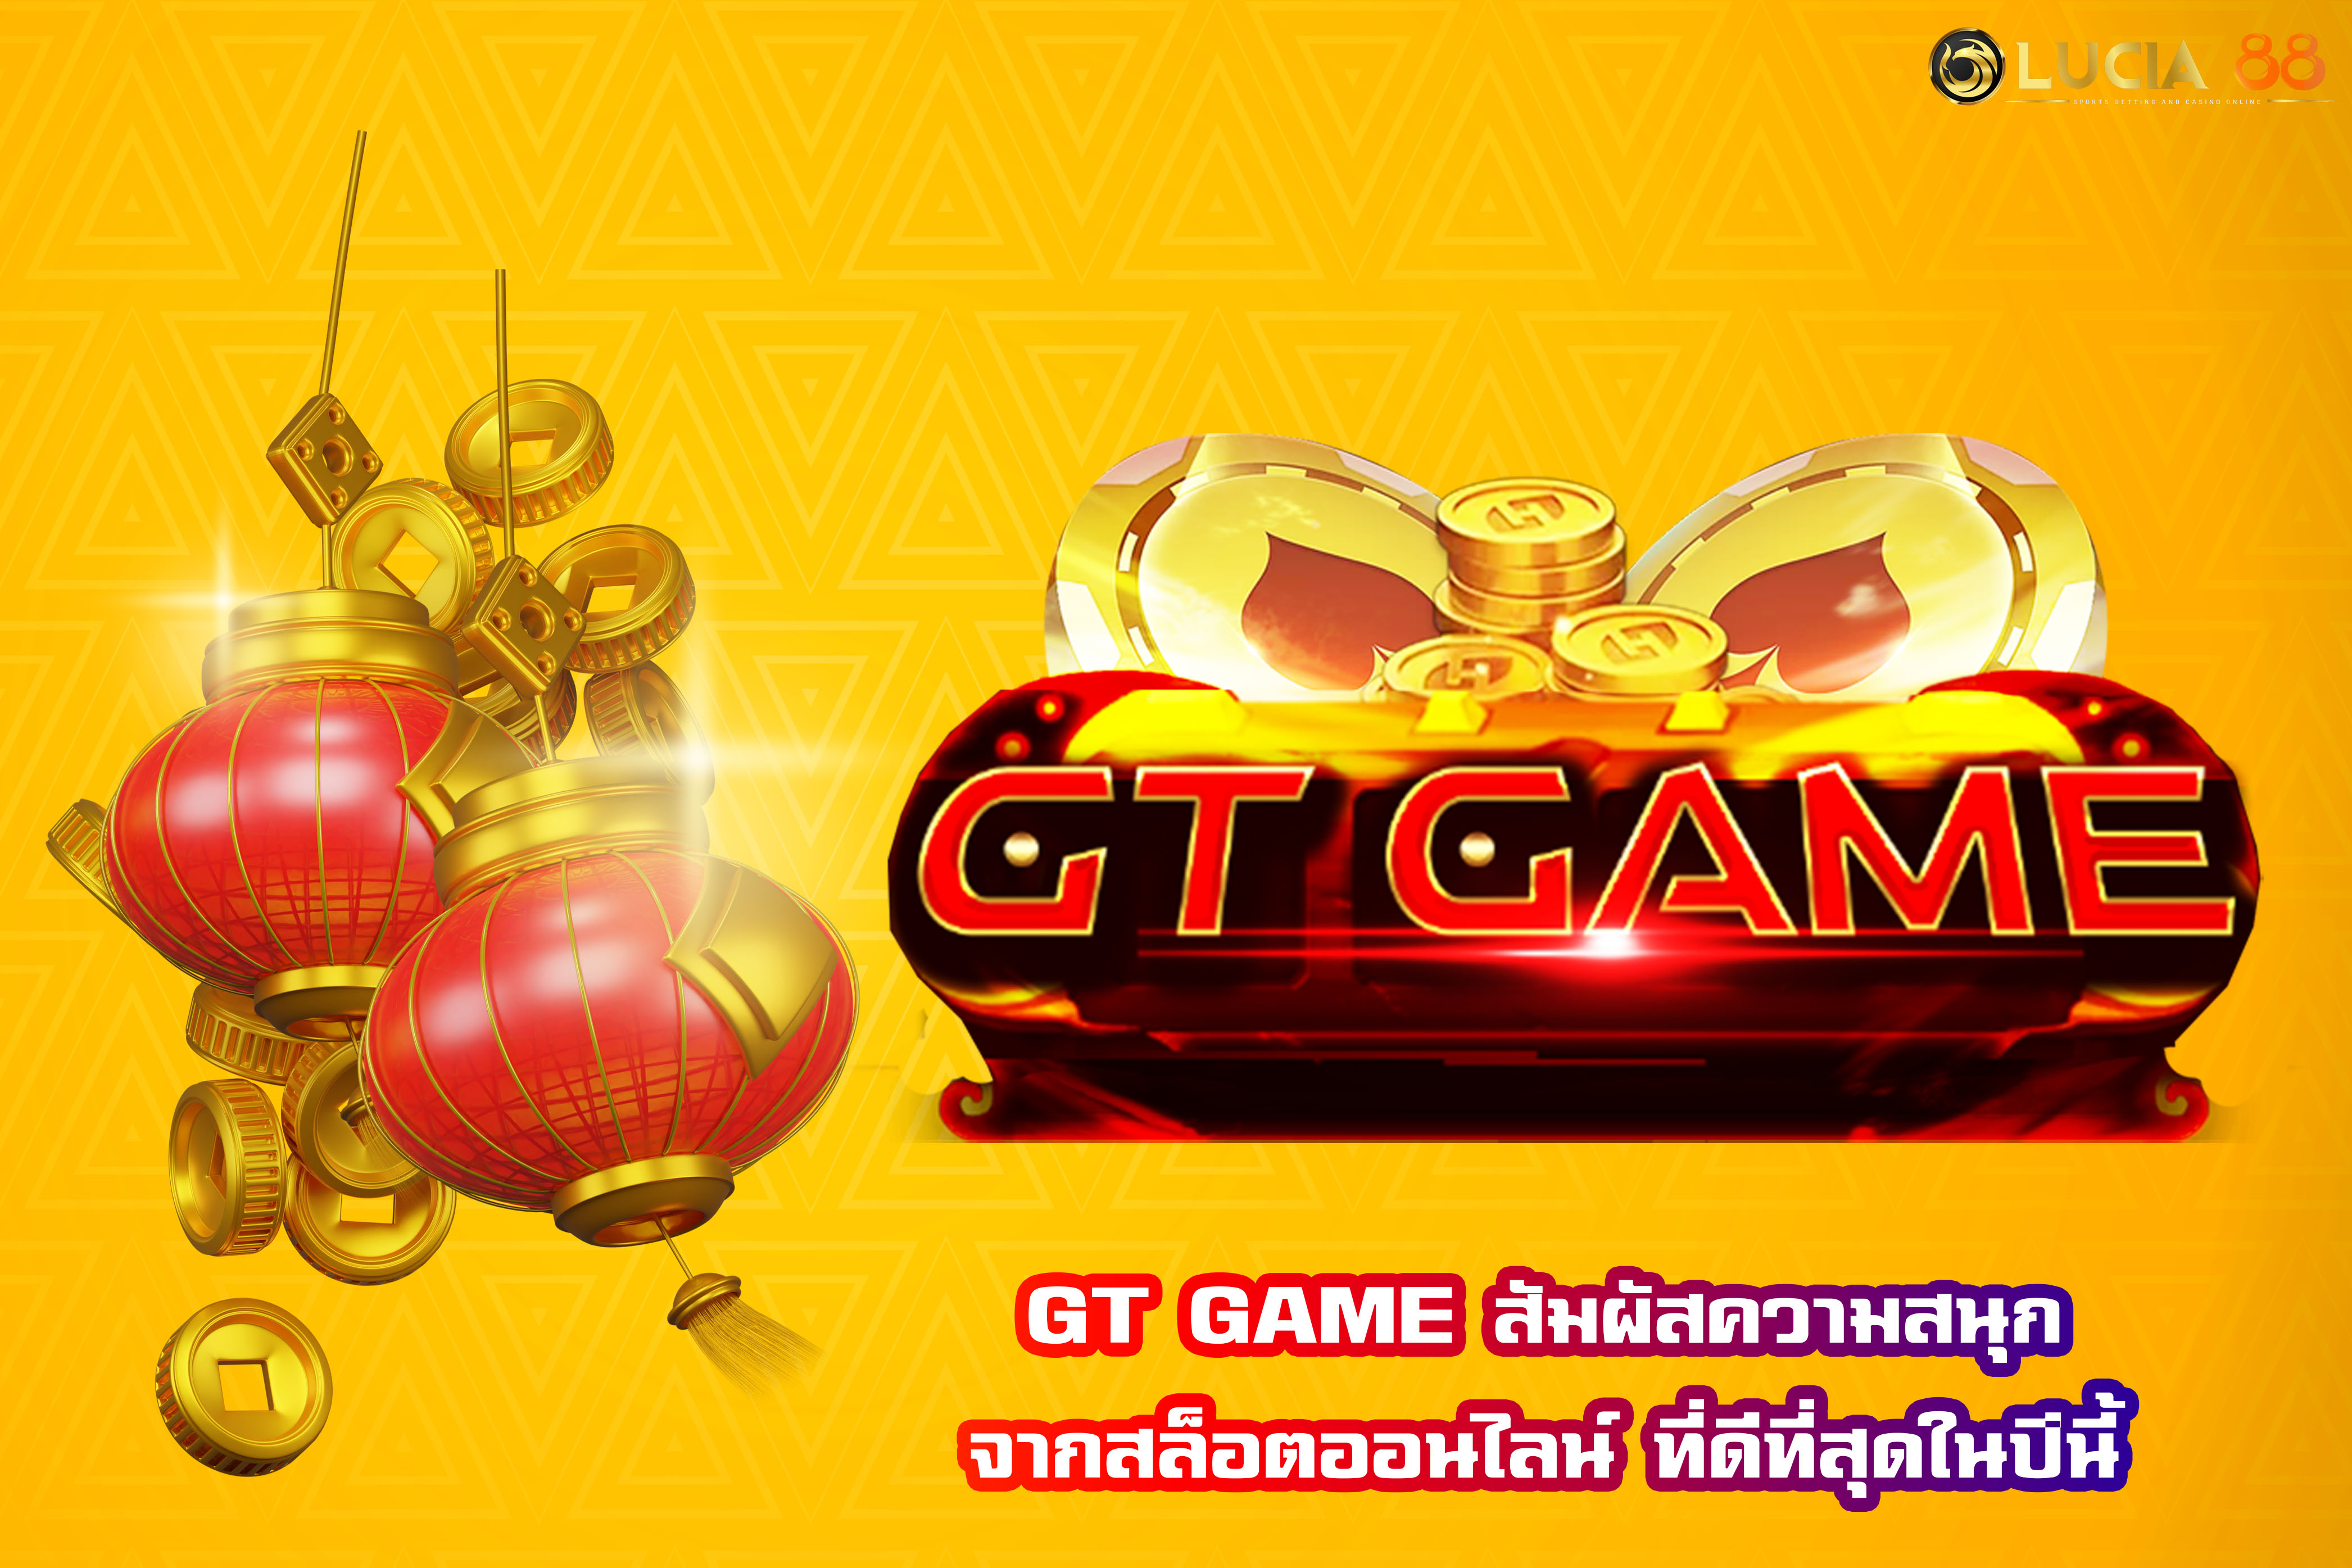 GT GAME สัมผัสความสนุกจากสล็อตออนไลน์ ที่ดีที่สุดในปีนี้